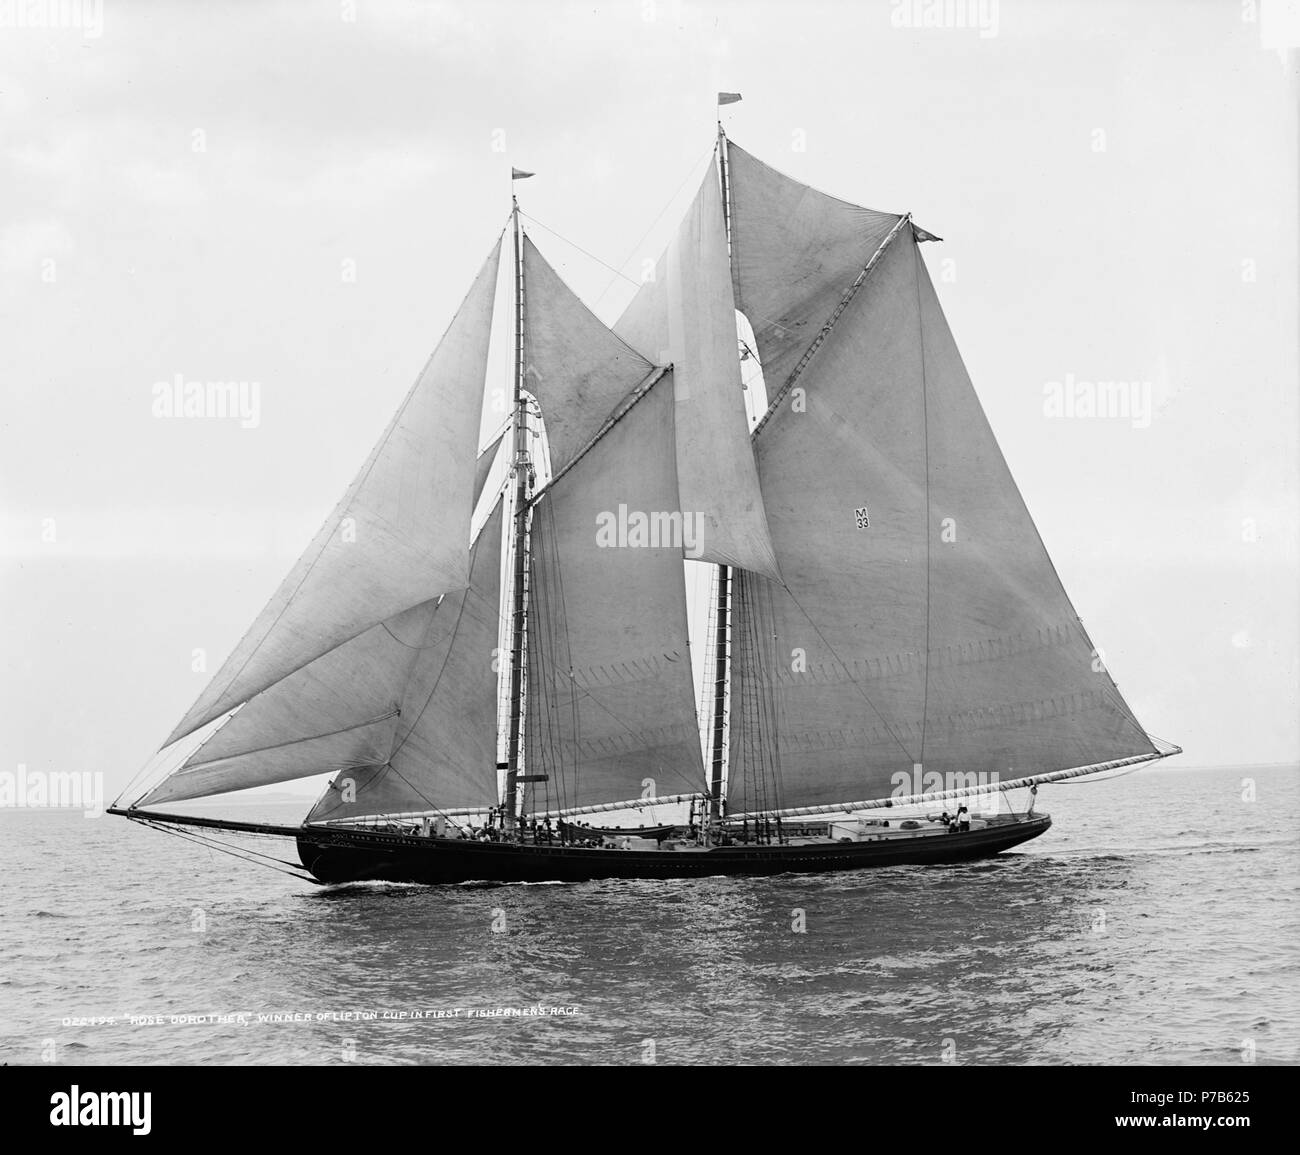 Inglés: El Rose Dorothea era uno de los famosos "Cabeza de Indio" goletas diseñado por Thomas McManus y construido en el Astillero de Tarr y James en Essex, MA en 1905. Ella fue de 108,7 m (33,1 pies) de largo, pesaba 108 toneladas, con un tonelaje de registro bruto de 147 toneladas y una tripulación de 26 hombres. Como parte de Boston's 'Casa Vieja' semana de celebración en agosto de 1907, Copa fue ofrecido por Sir Thomas Lipton para una raza de pescadores en Massachusetts Bay desde Provincetown a Gloucester a Boston. A pesar de perder su foretopmast en el tramo final de la carrera, el Rose Dorothea, con su tripulación de Provincetown, ganó la carrera por 2 Foto de stock